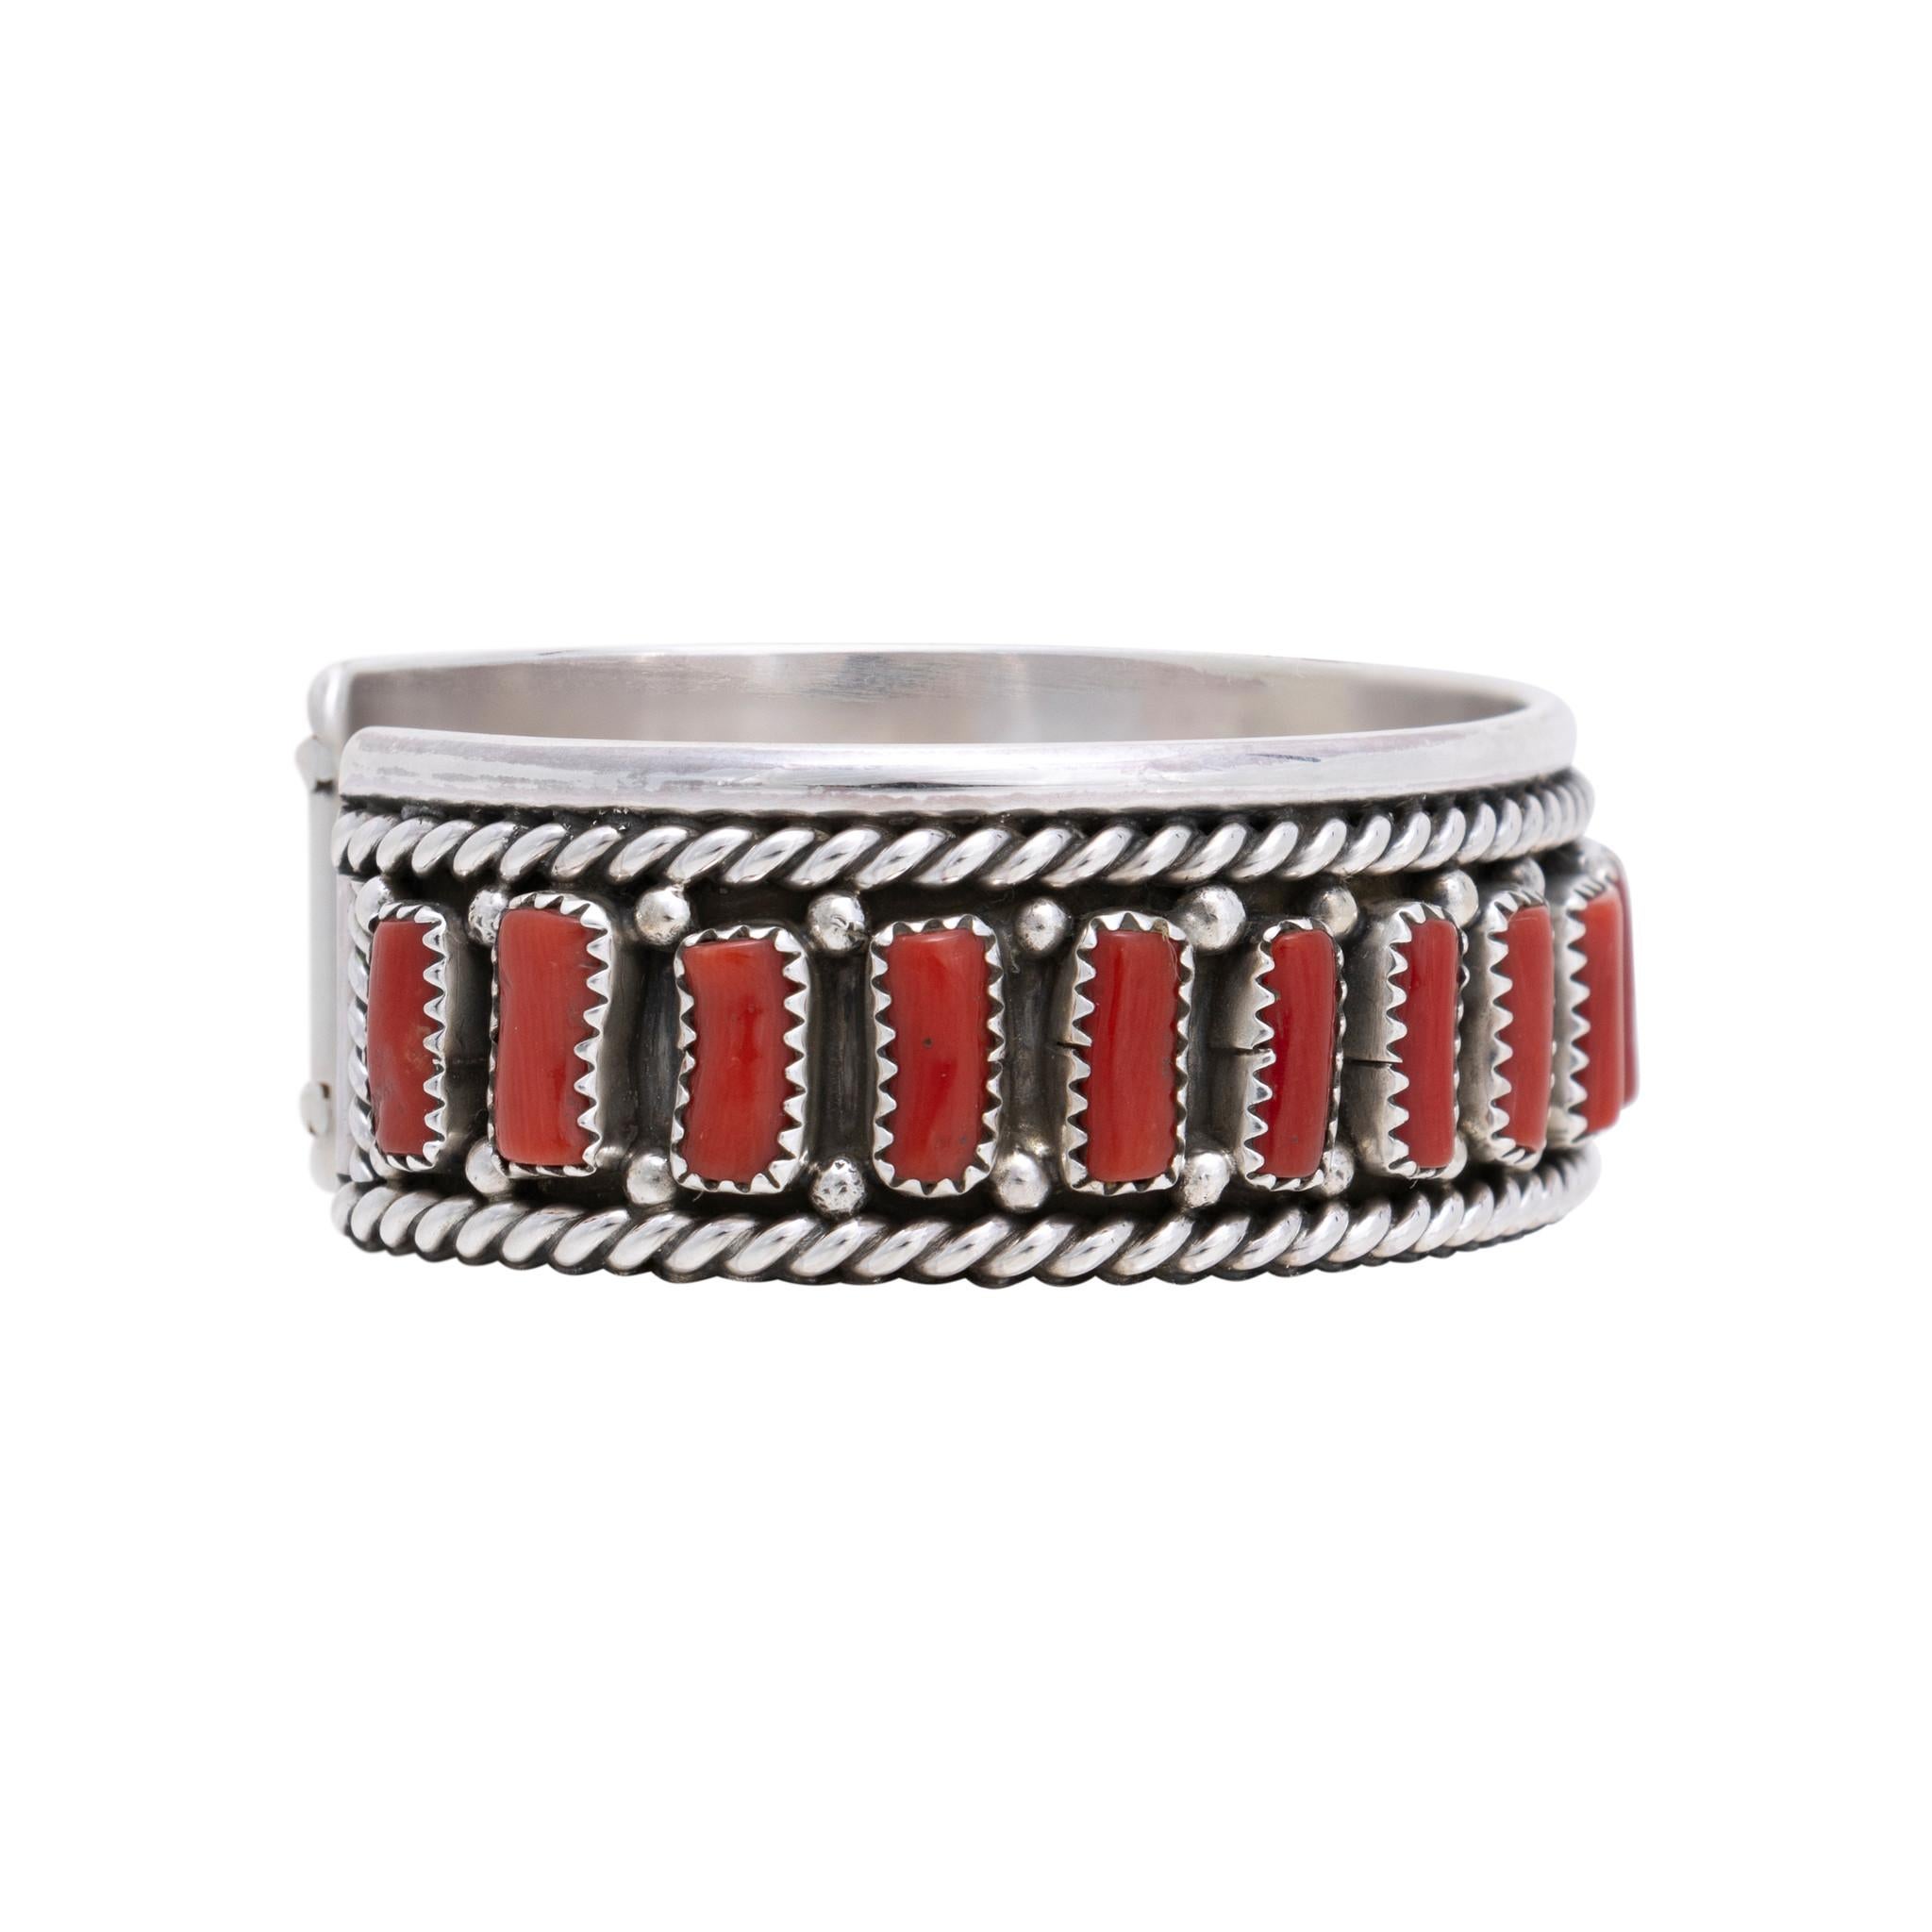 Bracelet manchette en corail indien Navajo et argent sterling par Chester Charley. Magnifique bracelet composé de 21 pierres de corail de première qualité serties dans une boîte d'ombre avec une corde torsadée et une bordure de perles en argent. Les